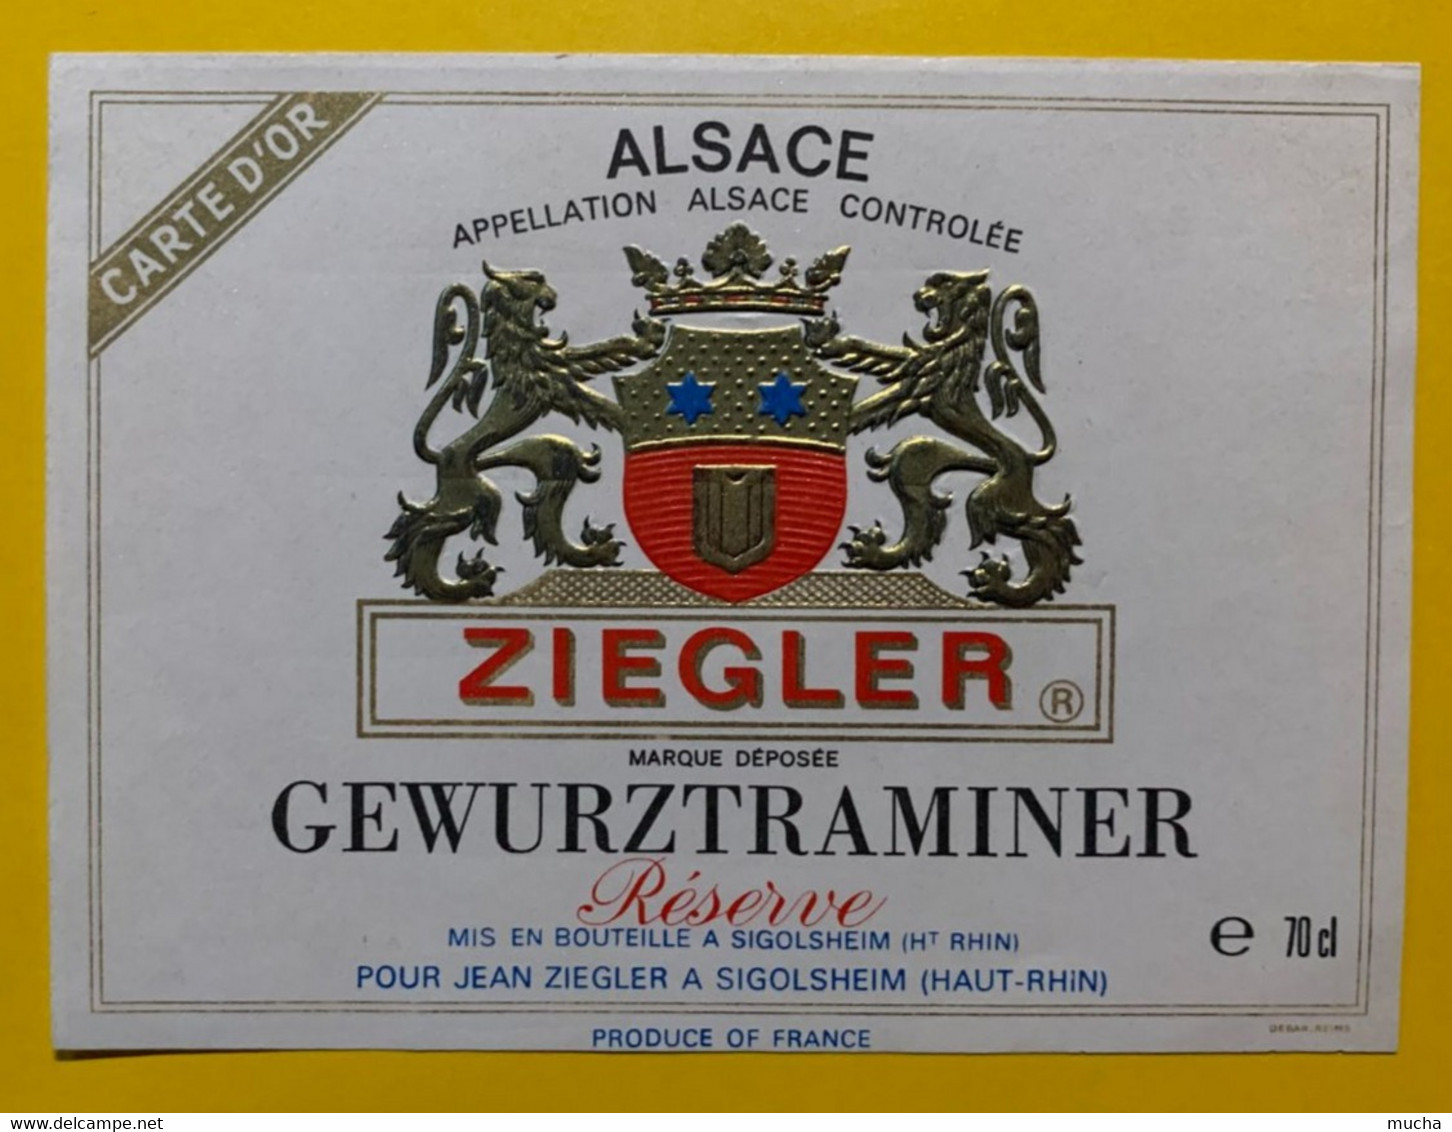 17918 - Gewurztraminer Carte D'Or Jean Ziegler Sigolsheim - Gewurztraminer